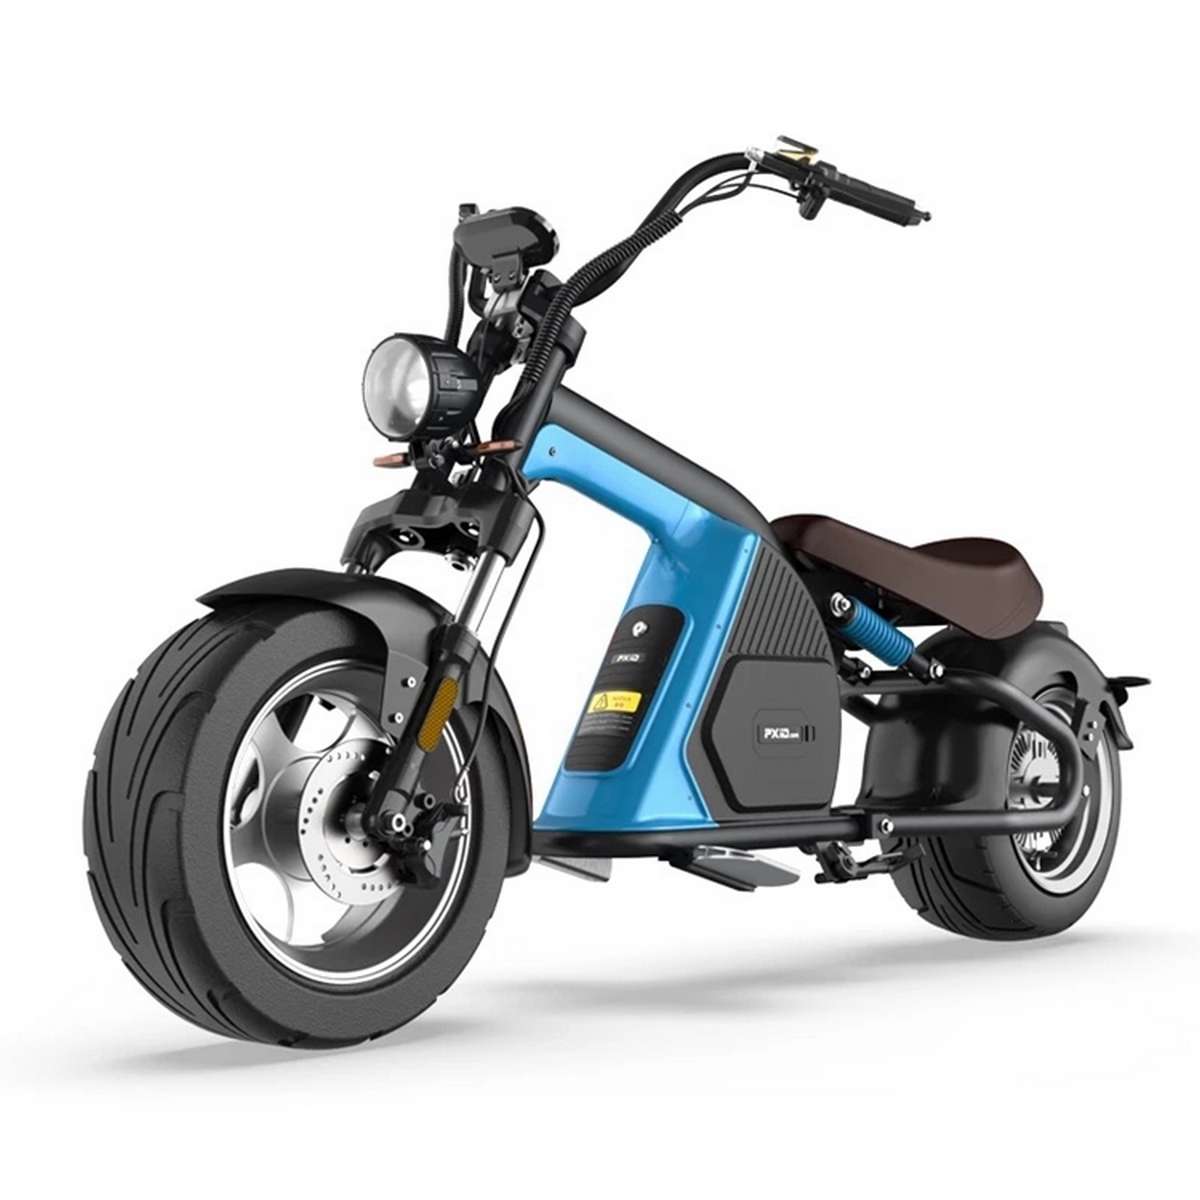 Ce scooter électrique aux allures de chopper sera-t-il disponible en France ? - Unalive